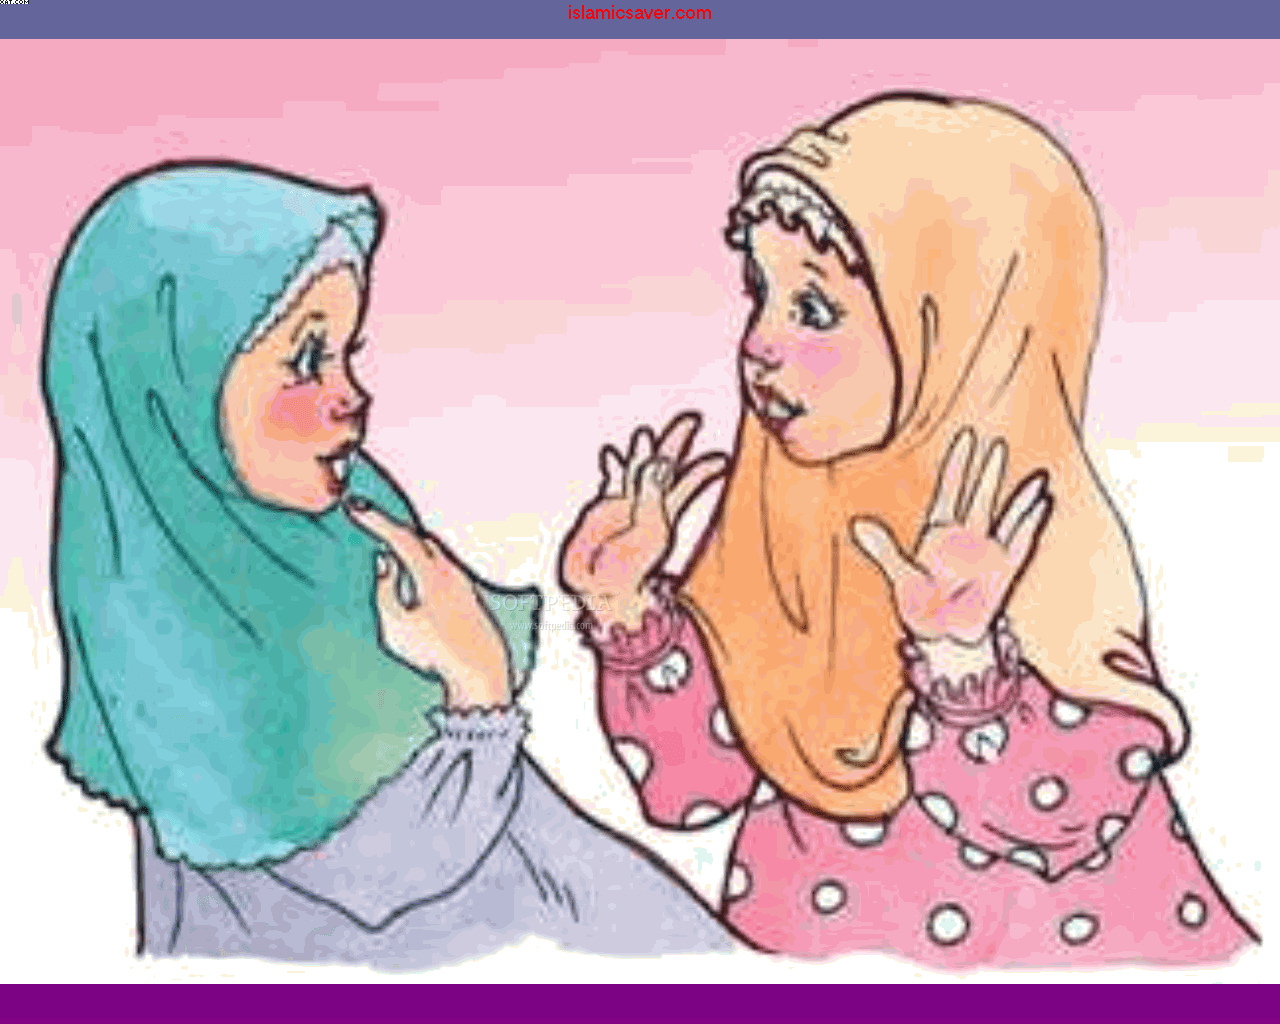 http://4.bp.blogspot.com/_jzkfHl4nmeU/TCH5rmUCNYI/AAAAAAAAAHA/UCkEkDTvJYs/s1600/Islamic-cartoon-screensaver_1.png